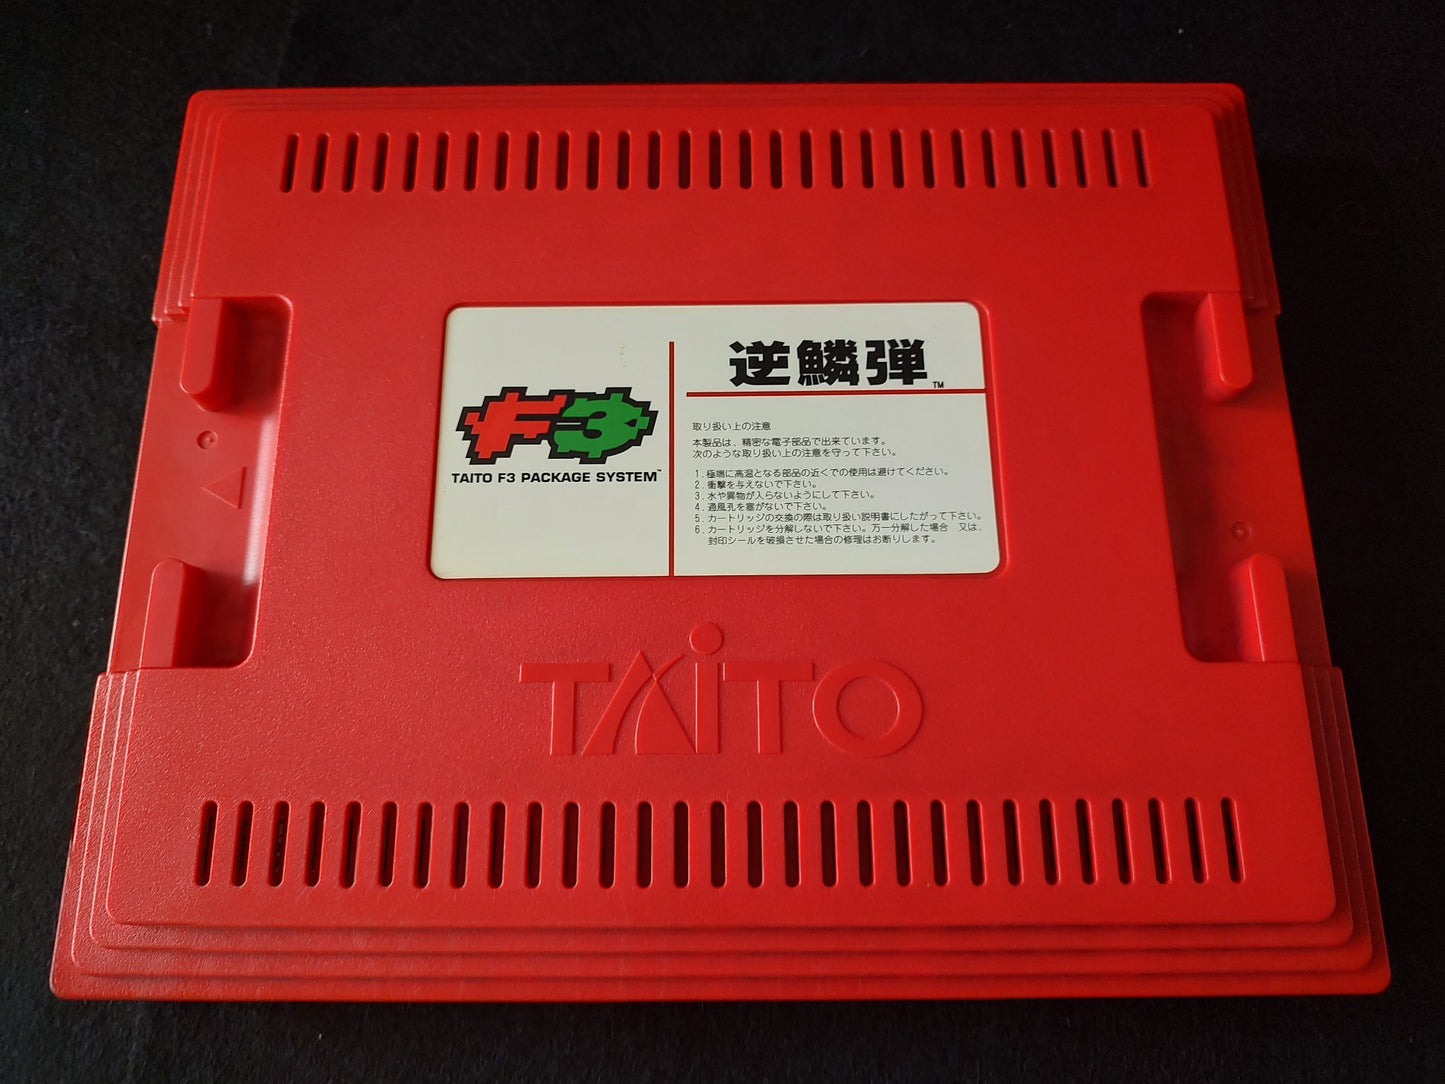 GEKIRINDAN Taito Taito F3 Package System, Cartridge, Manuals, Working-g0323-